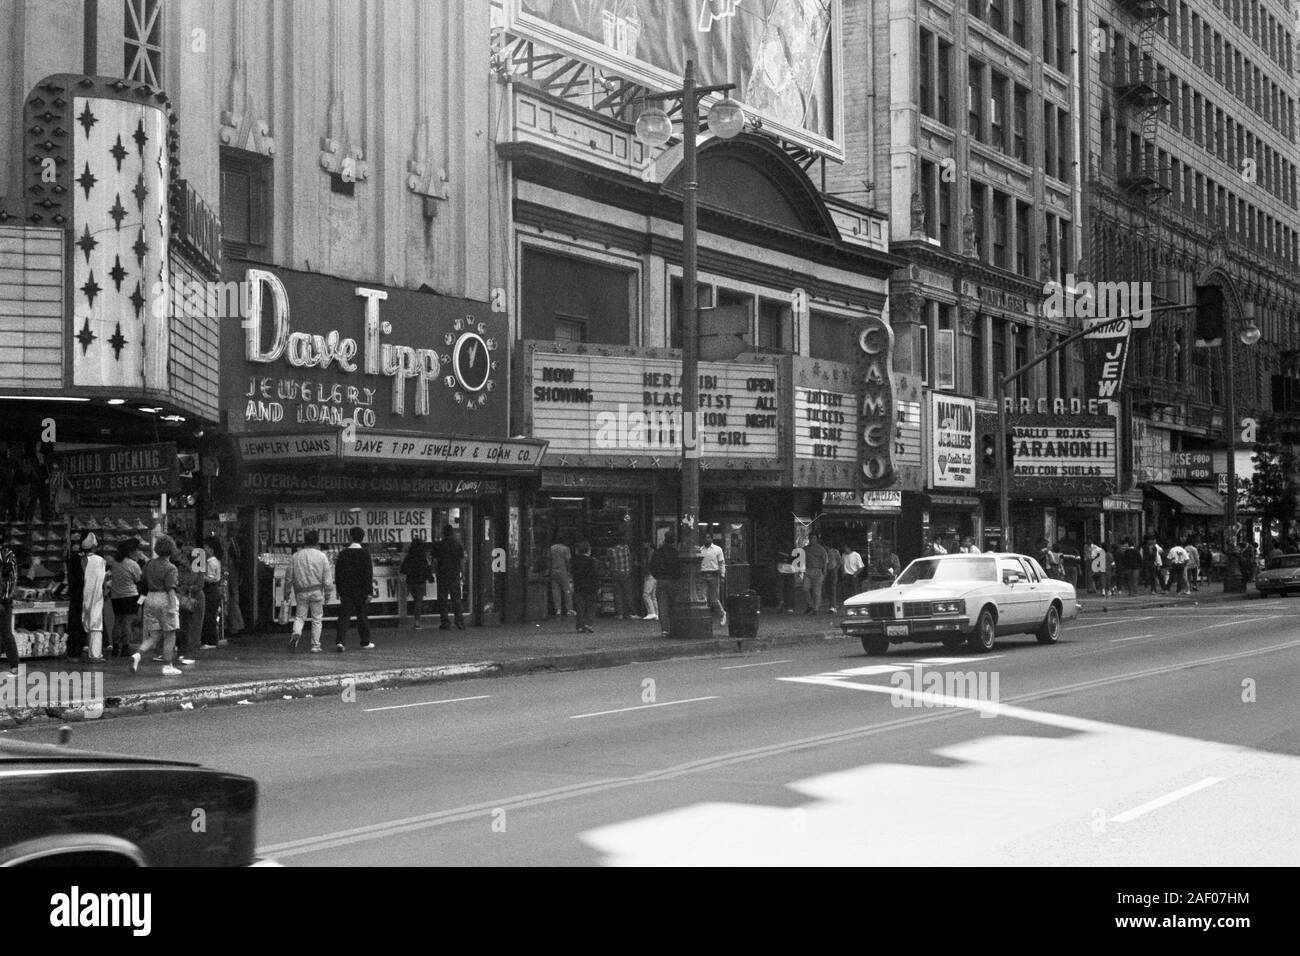 Los Angeles, Kalifornien, USA - Dezember, 1989: Vintage schwarz und weiß Editorial von Theatern und Geschäften am Broadway in der Nähe der 5th Street. Stockfoto